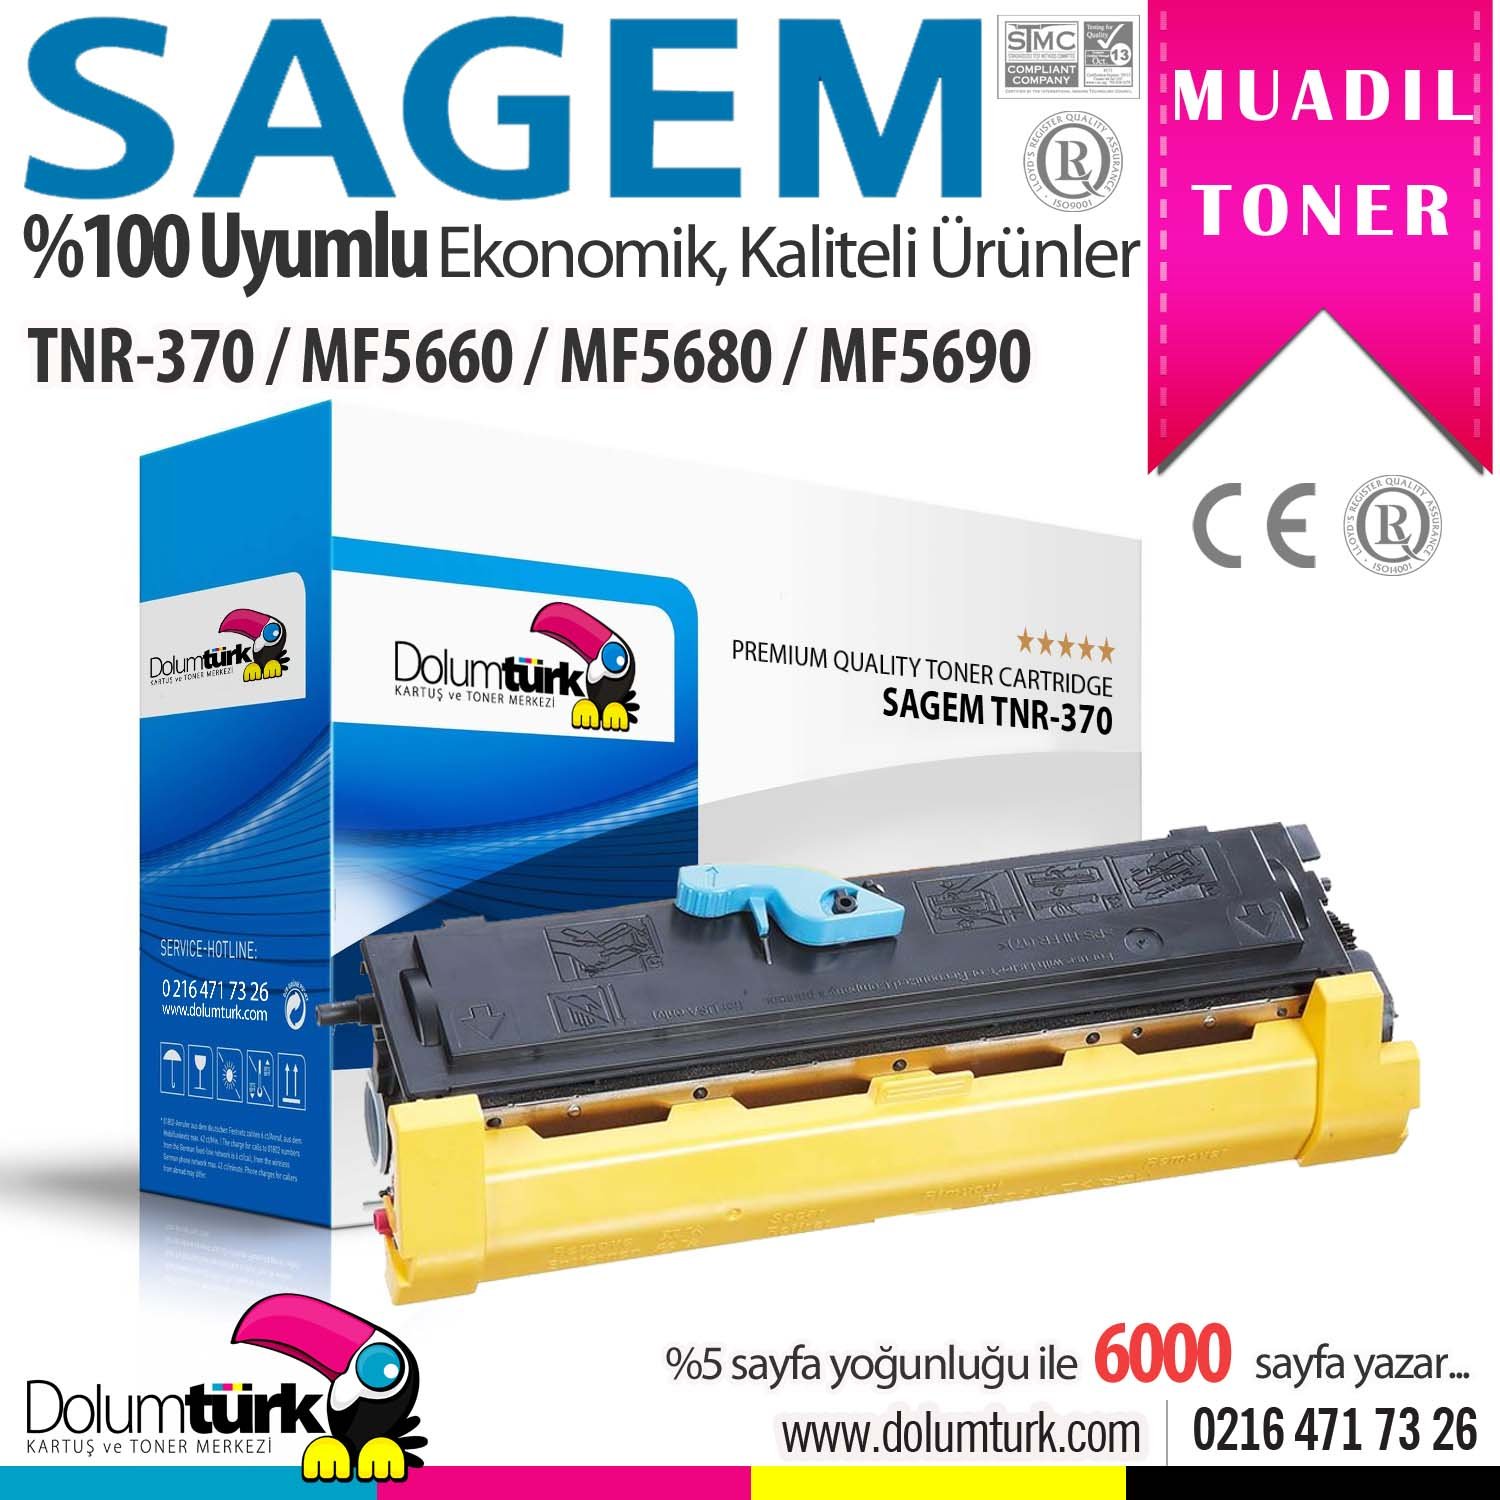 Sagem TN-370 Muadil Toner , Sagem Fax 4640 / Laser Pro 351 / Laser Pro 356 / Laser Pro 358 / MF 4690n / MF 5660 / MF 5690dn / MF-5680n Muadil Toneri 6000 Sayfalık